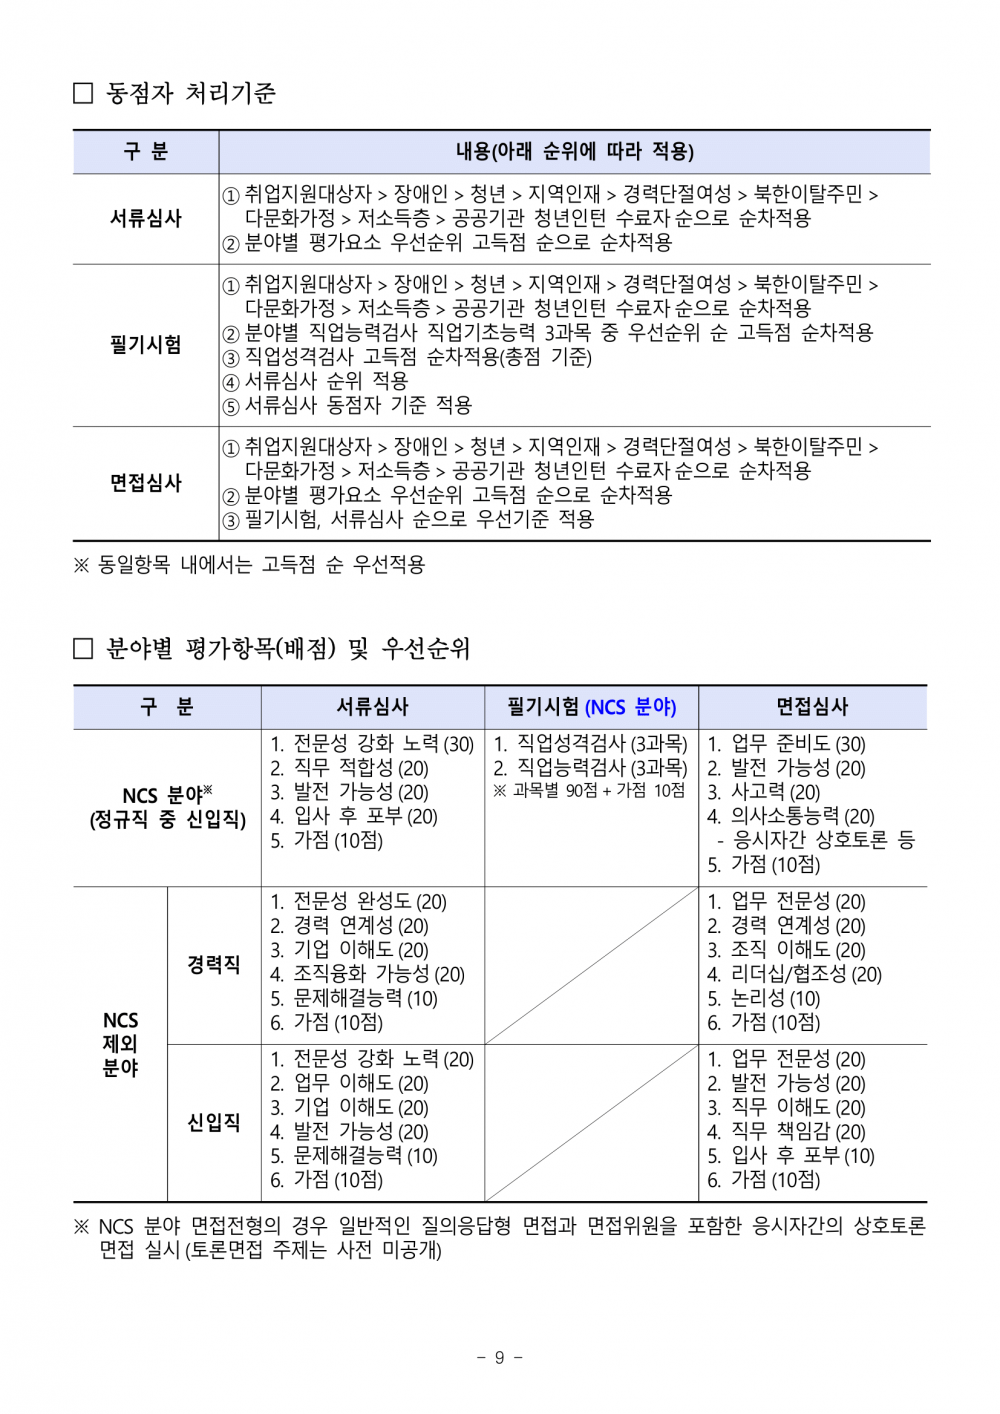 우체국금융개발원_채용공고문-09